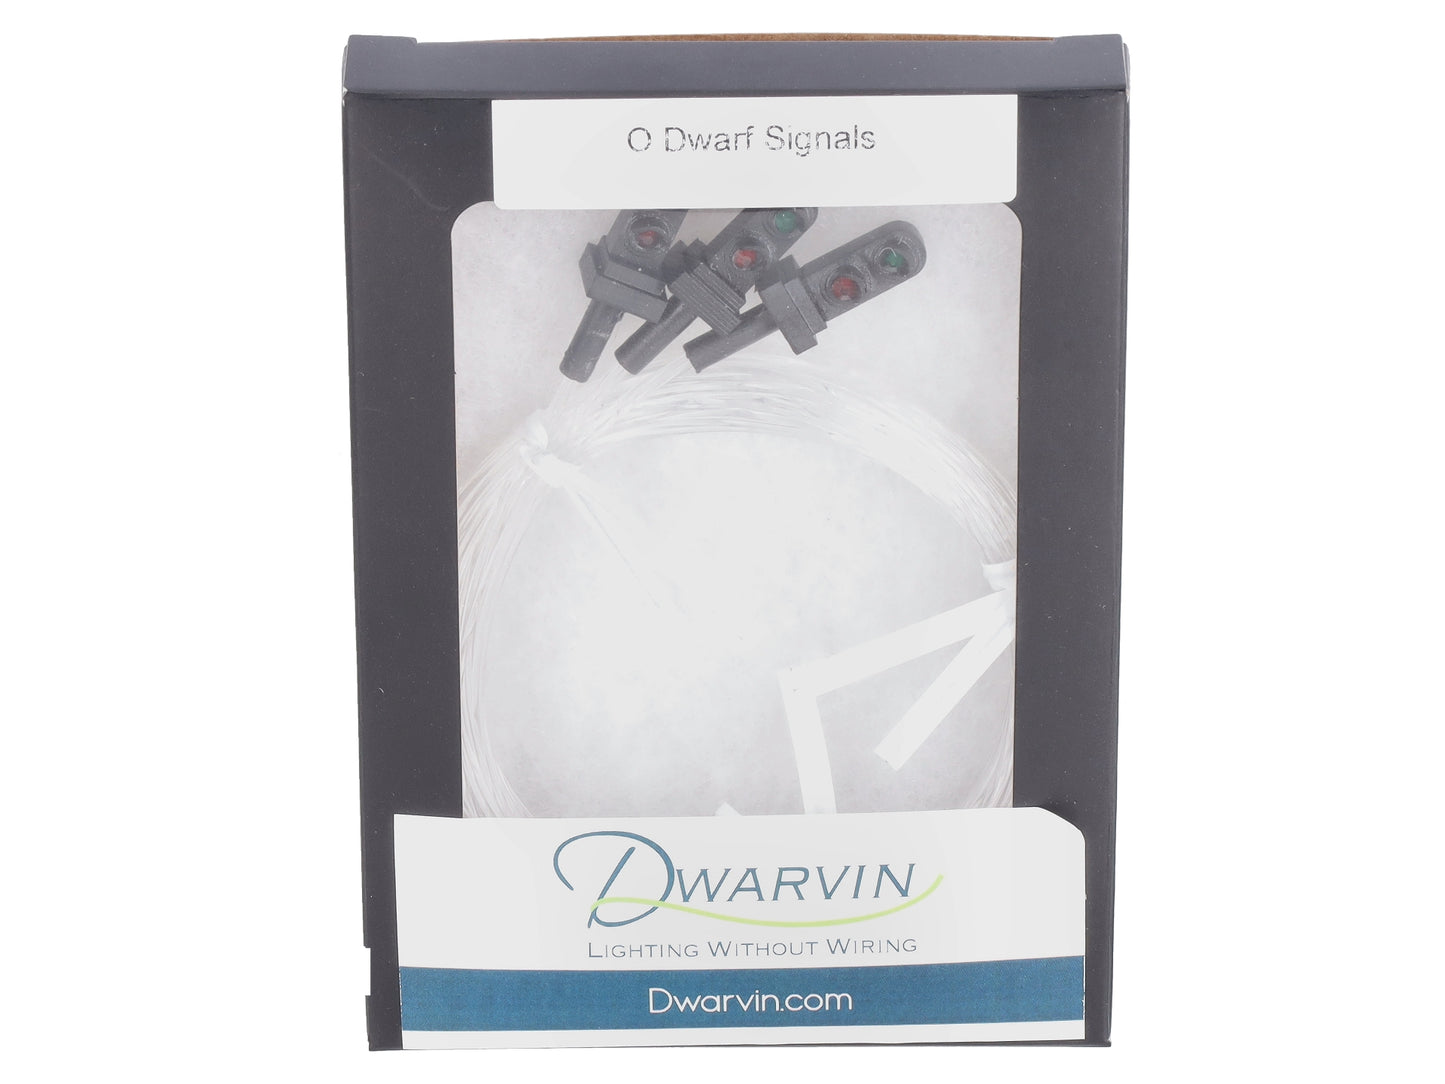 Dwarvin DVFLBS301-3 O Fiber-Lit 2-Color Dwarf Signals (Pack of 3)